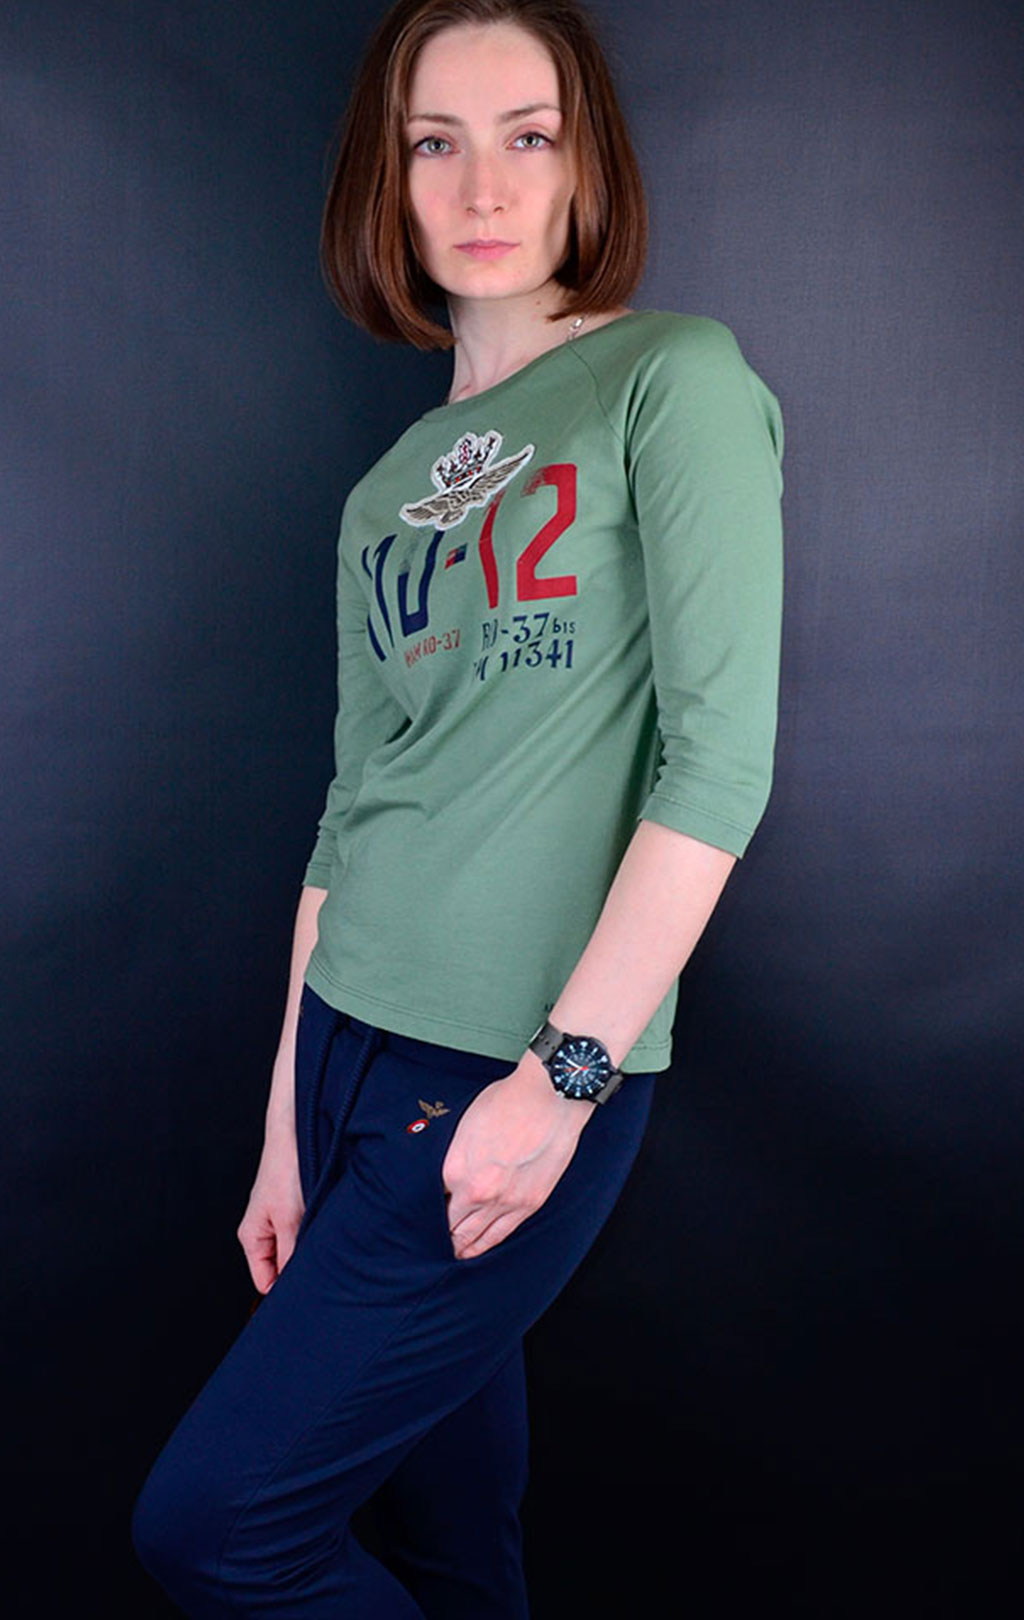 Женская футболка AERONAUTICA MILITARE рукава 3/4 verde militare (TS 1506) 